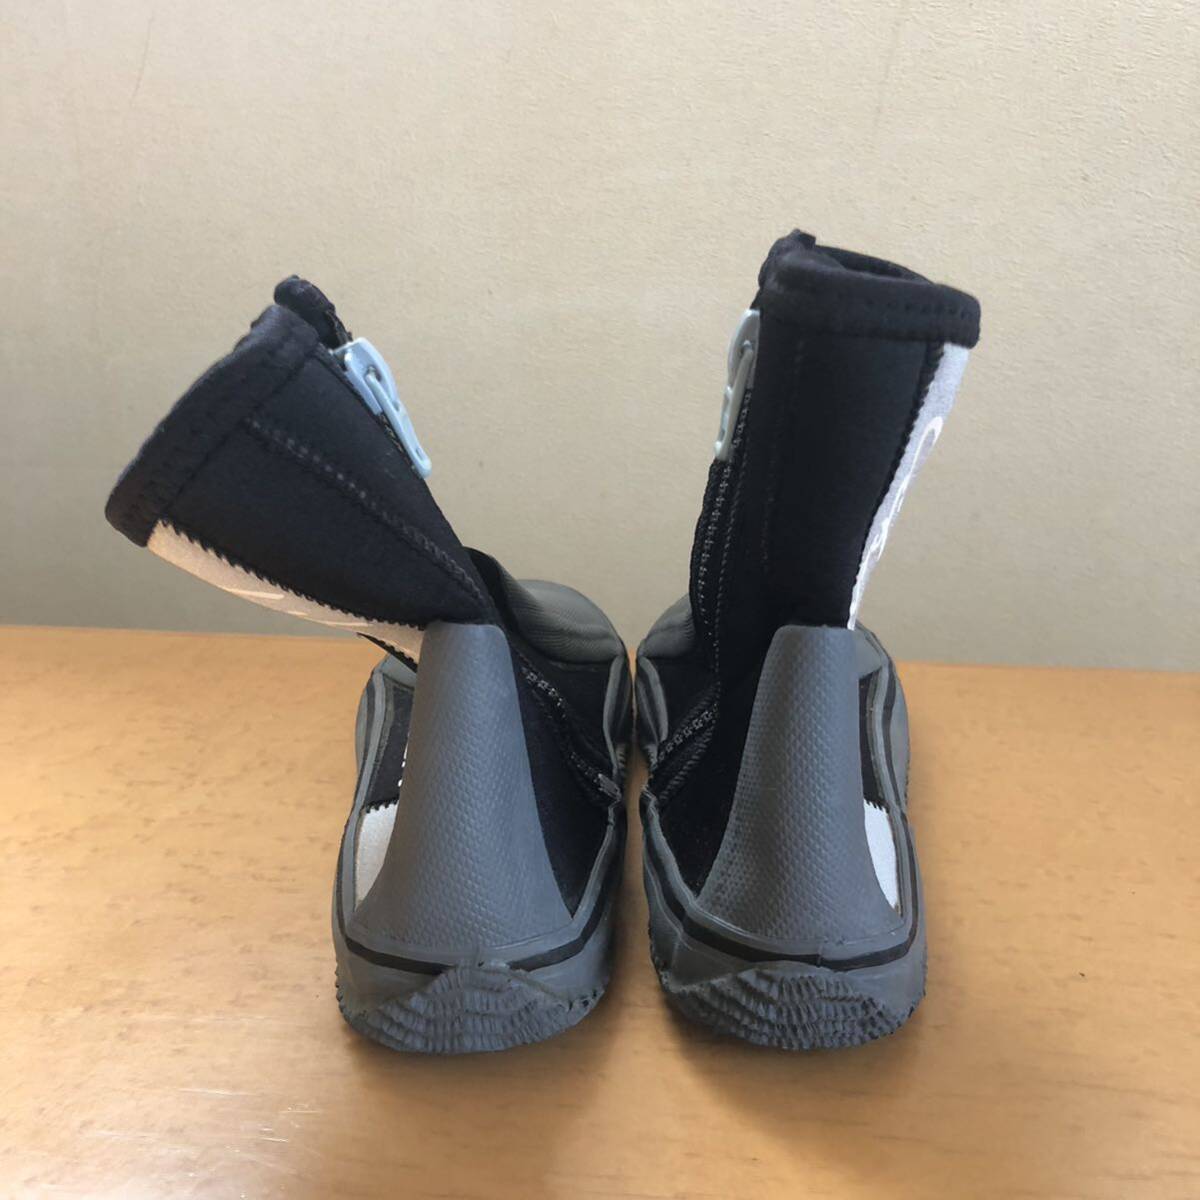 TUSA/tsusa дайвинг ботинки застежка-молния имеется 23cm USED товар морская обувь .... развлечение 